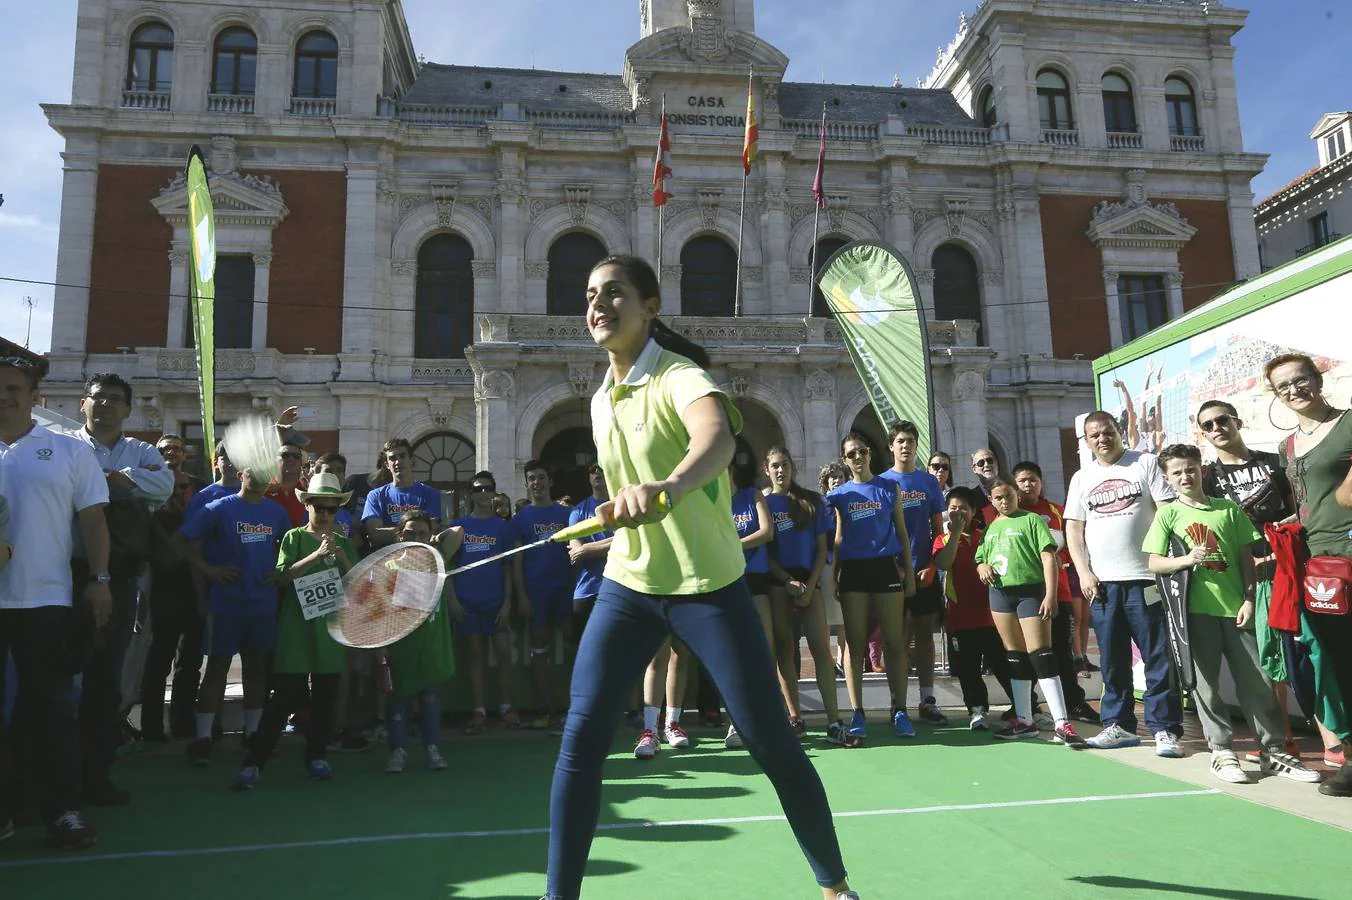 20.05 Carolina Marín, campeona del mundo, de Europa y olímpica de bádminton, juega un partido de exhibición ante decenas de personas en la Plaza Mayor.